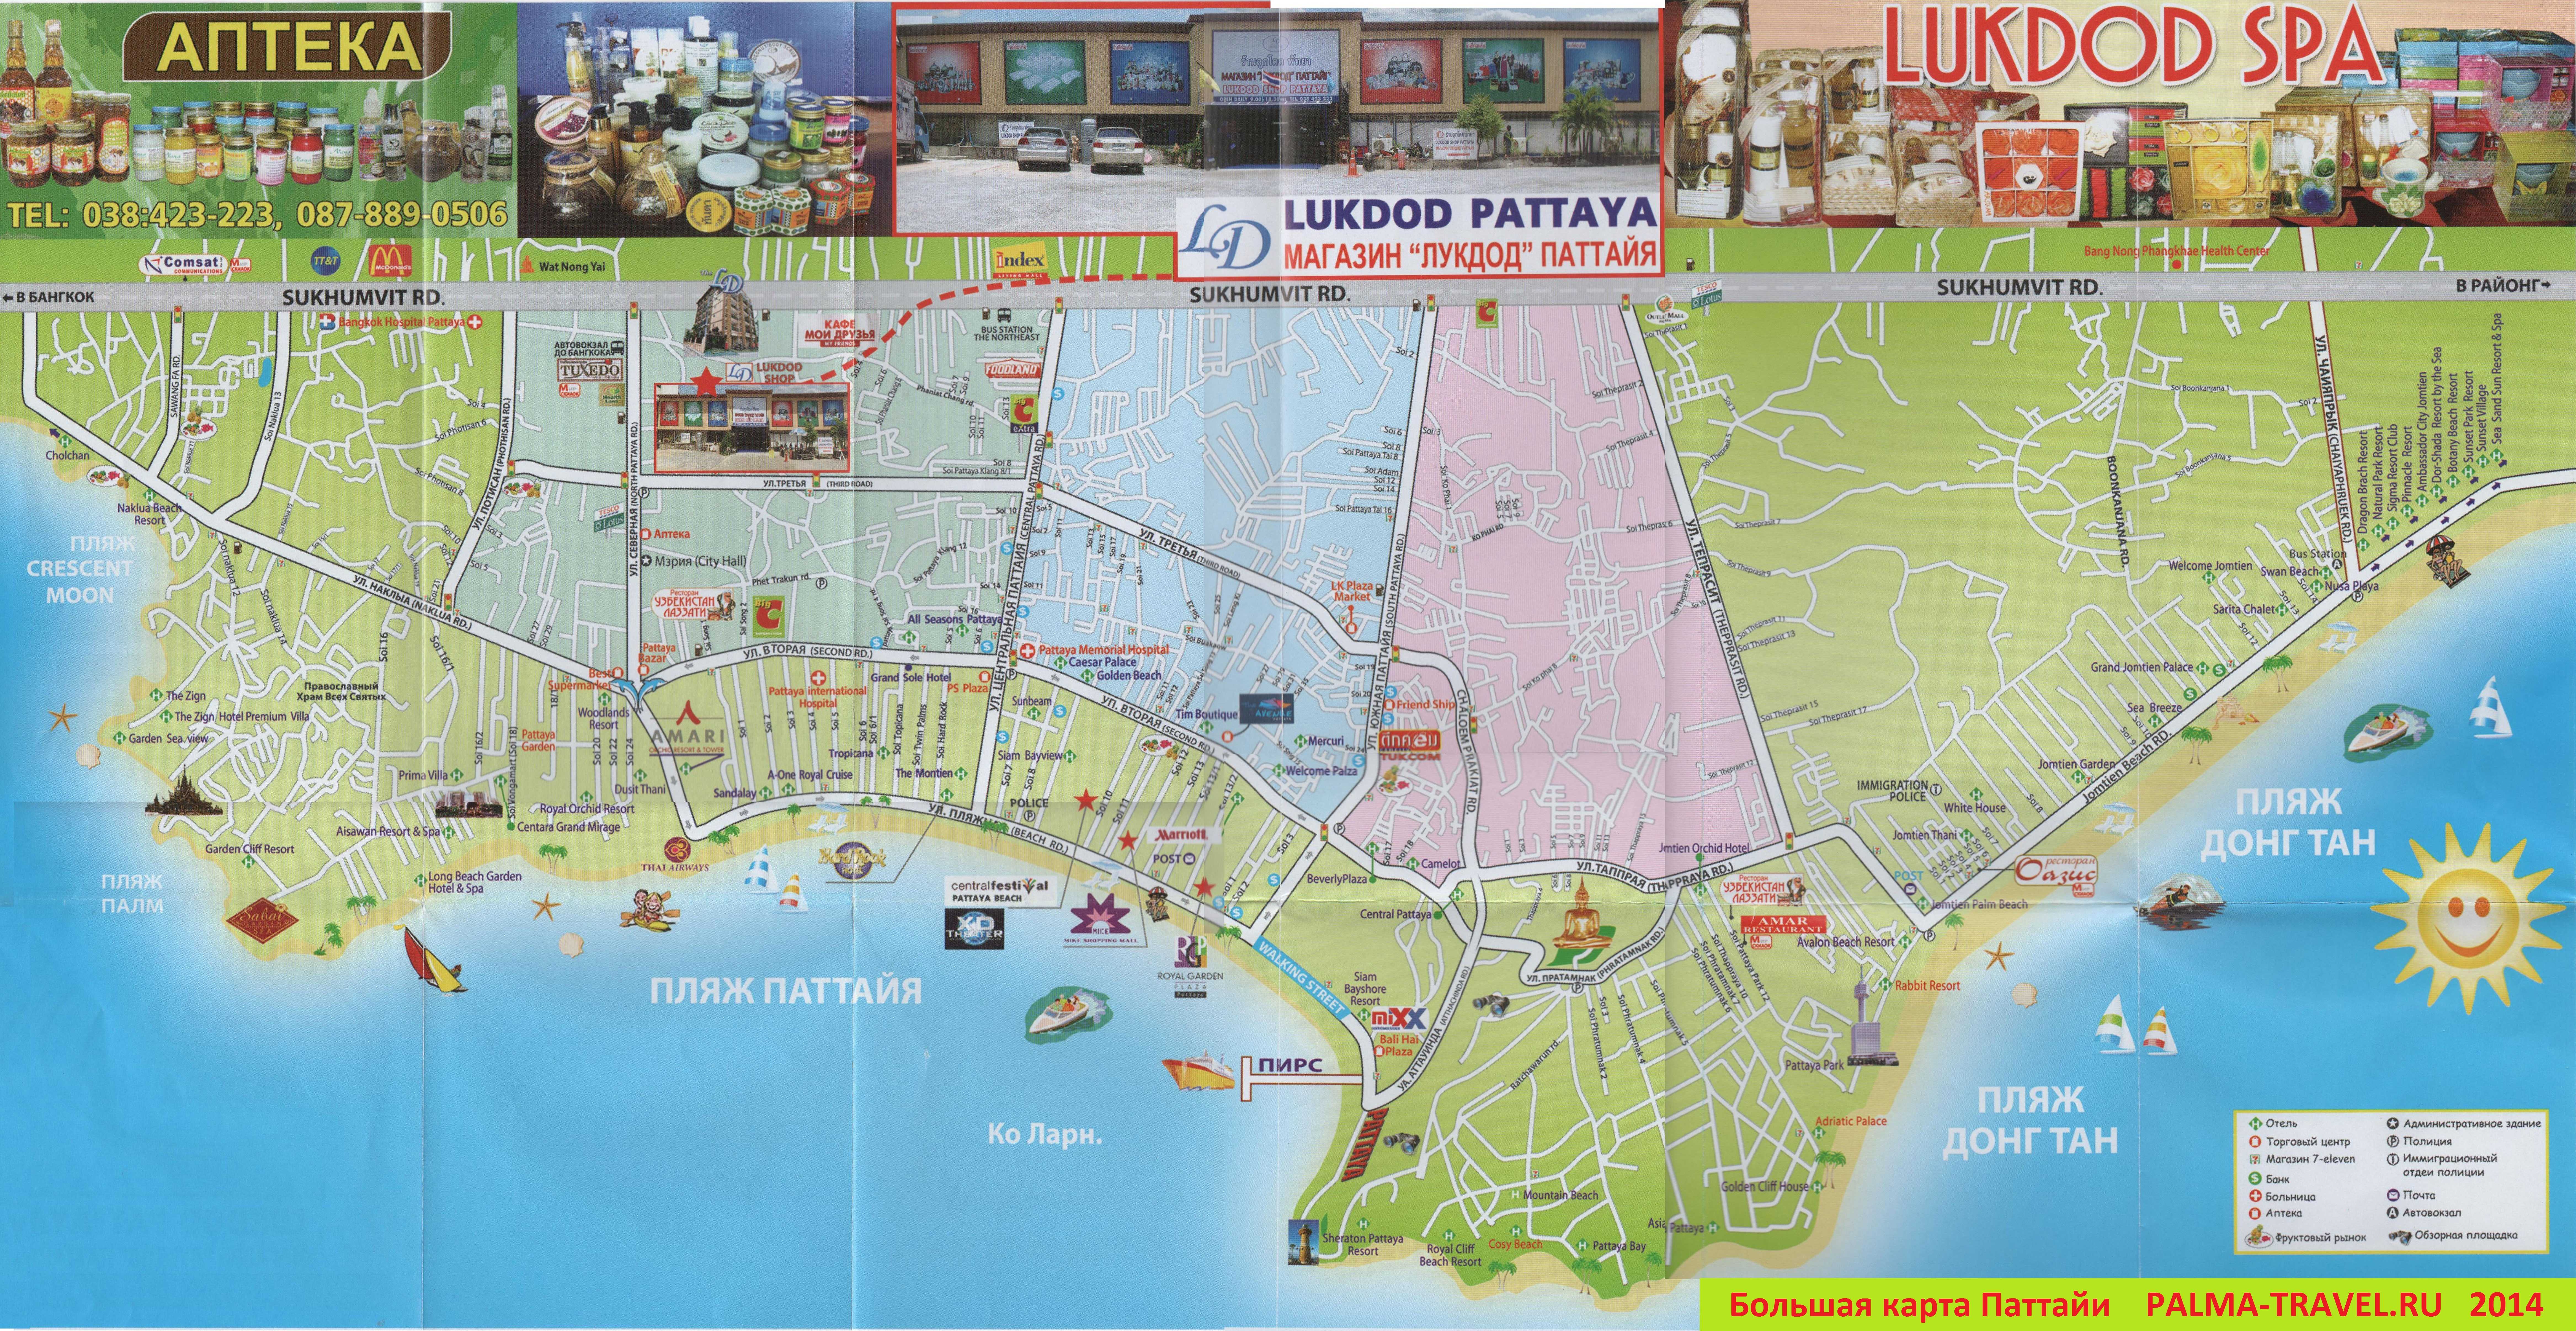 Рынки в паттайе на карте. Схема туктуков Паттайя. Карта Паттайя Тайланд с отелями. Туристическая карта Паттайи. Карта побережья Паттайи с отелями.